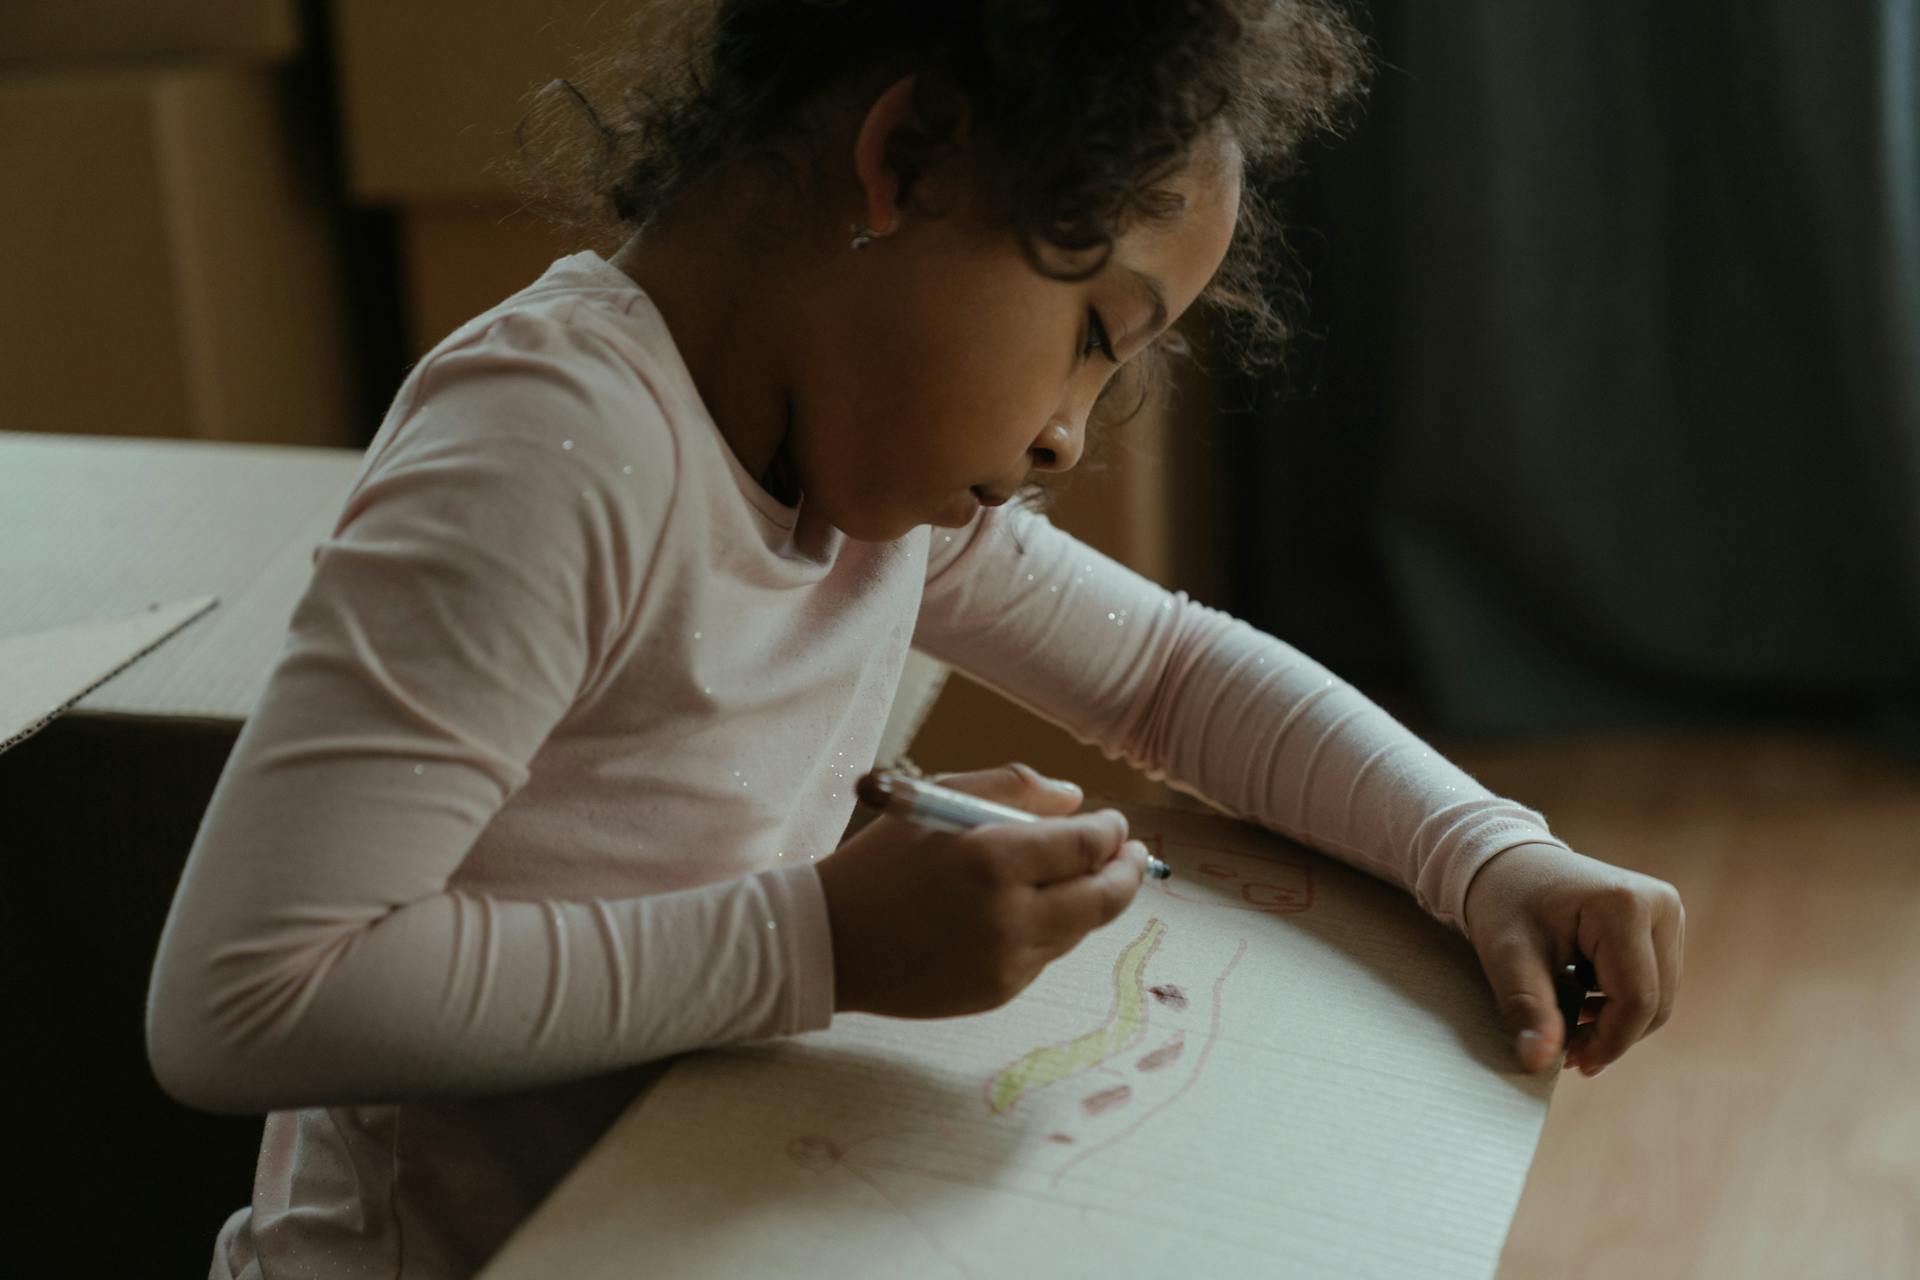 Enfant dessinant sur une boîte | Source : Pexels